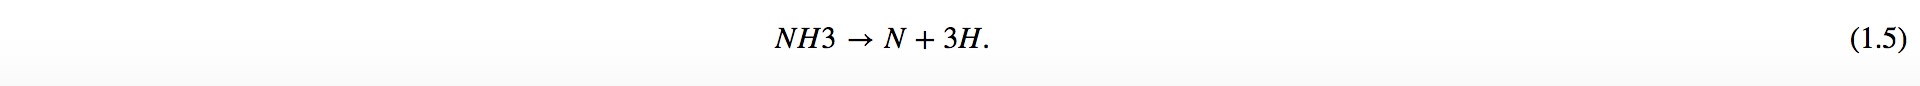 formula 7.jpg